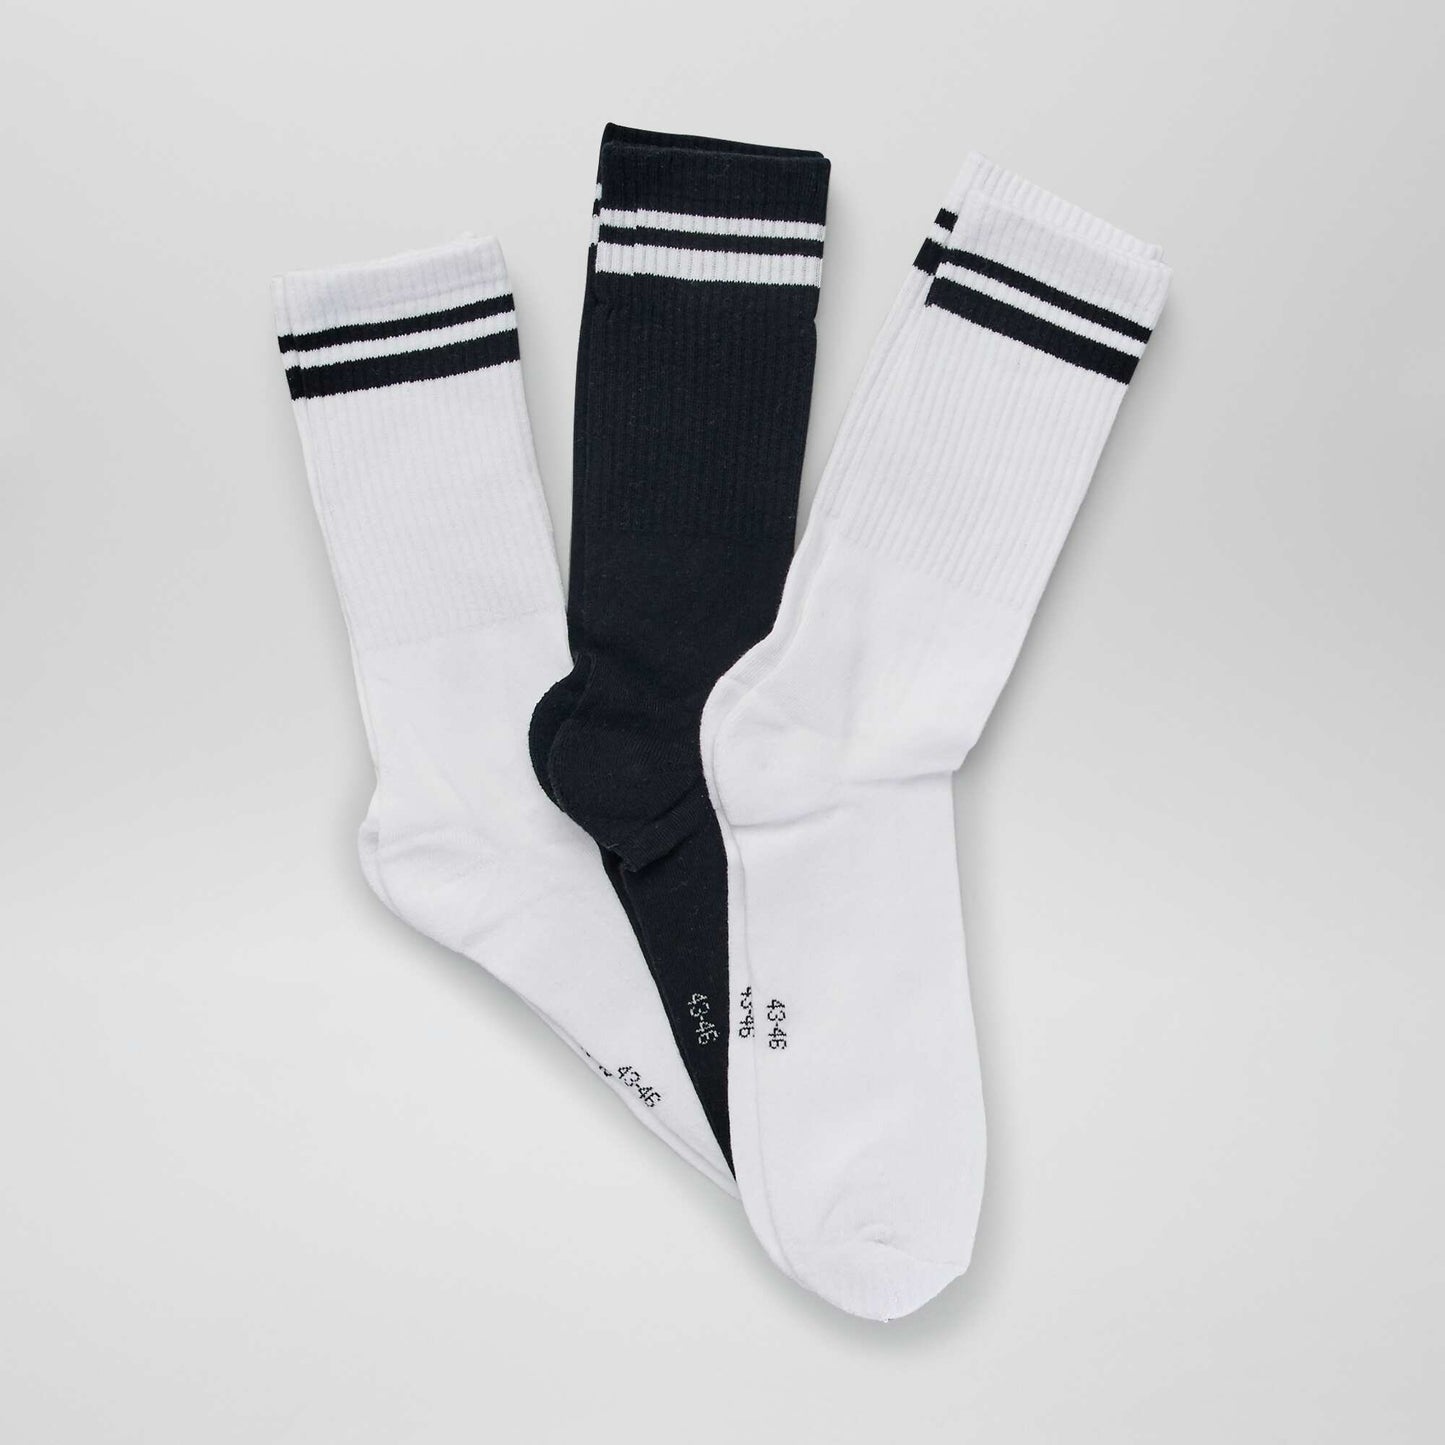 Lot de 3 paires de chaussettes côtelées Noir/blanc